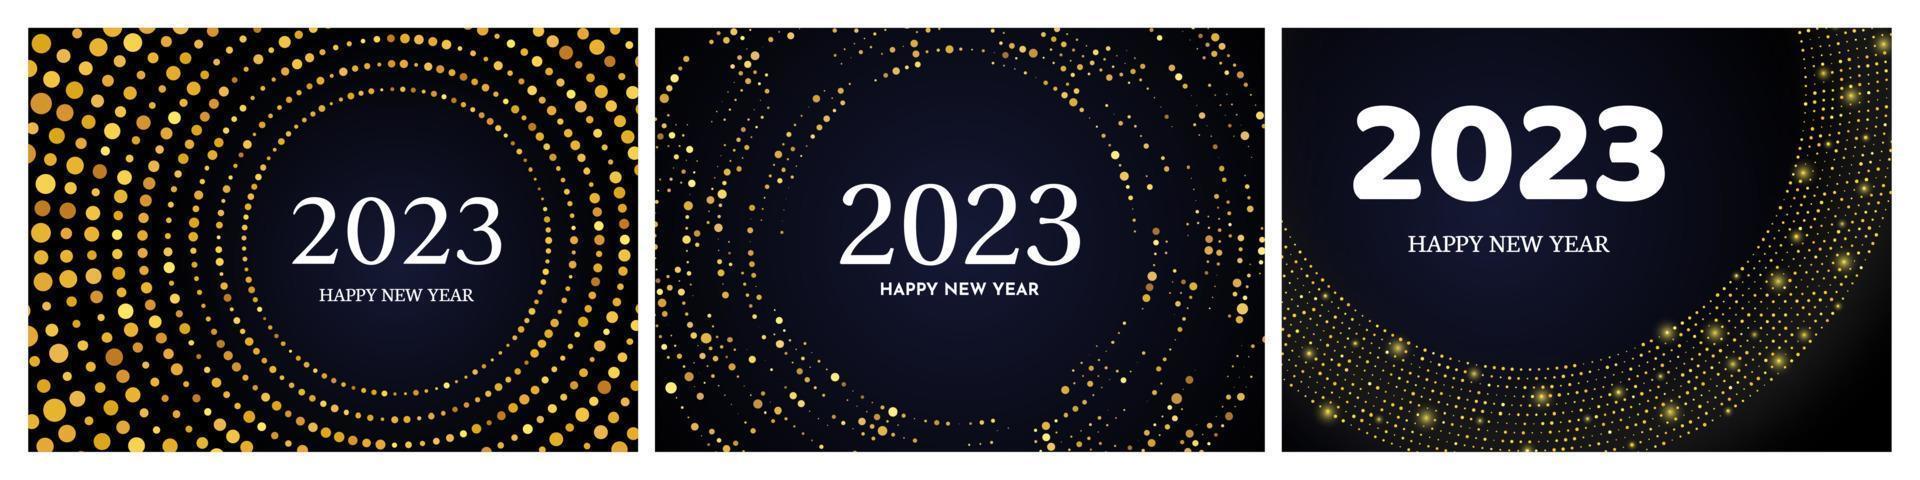 2023 feliz año nuevo de patrón de brillo dorado vector